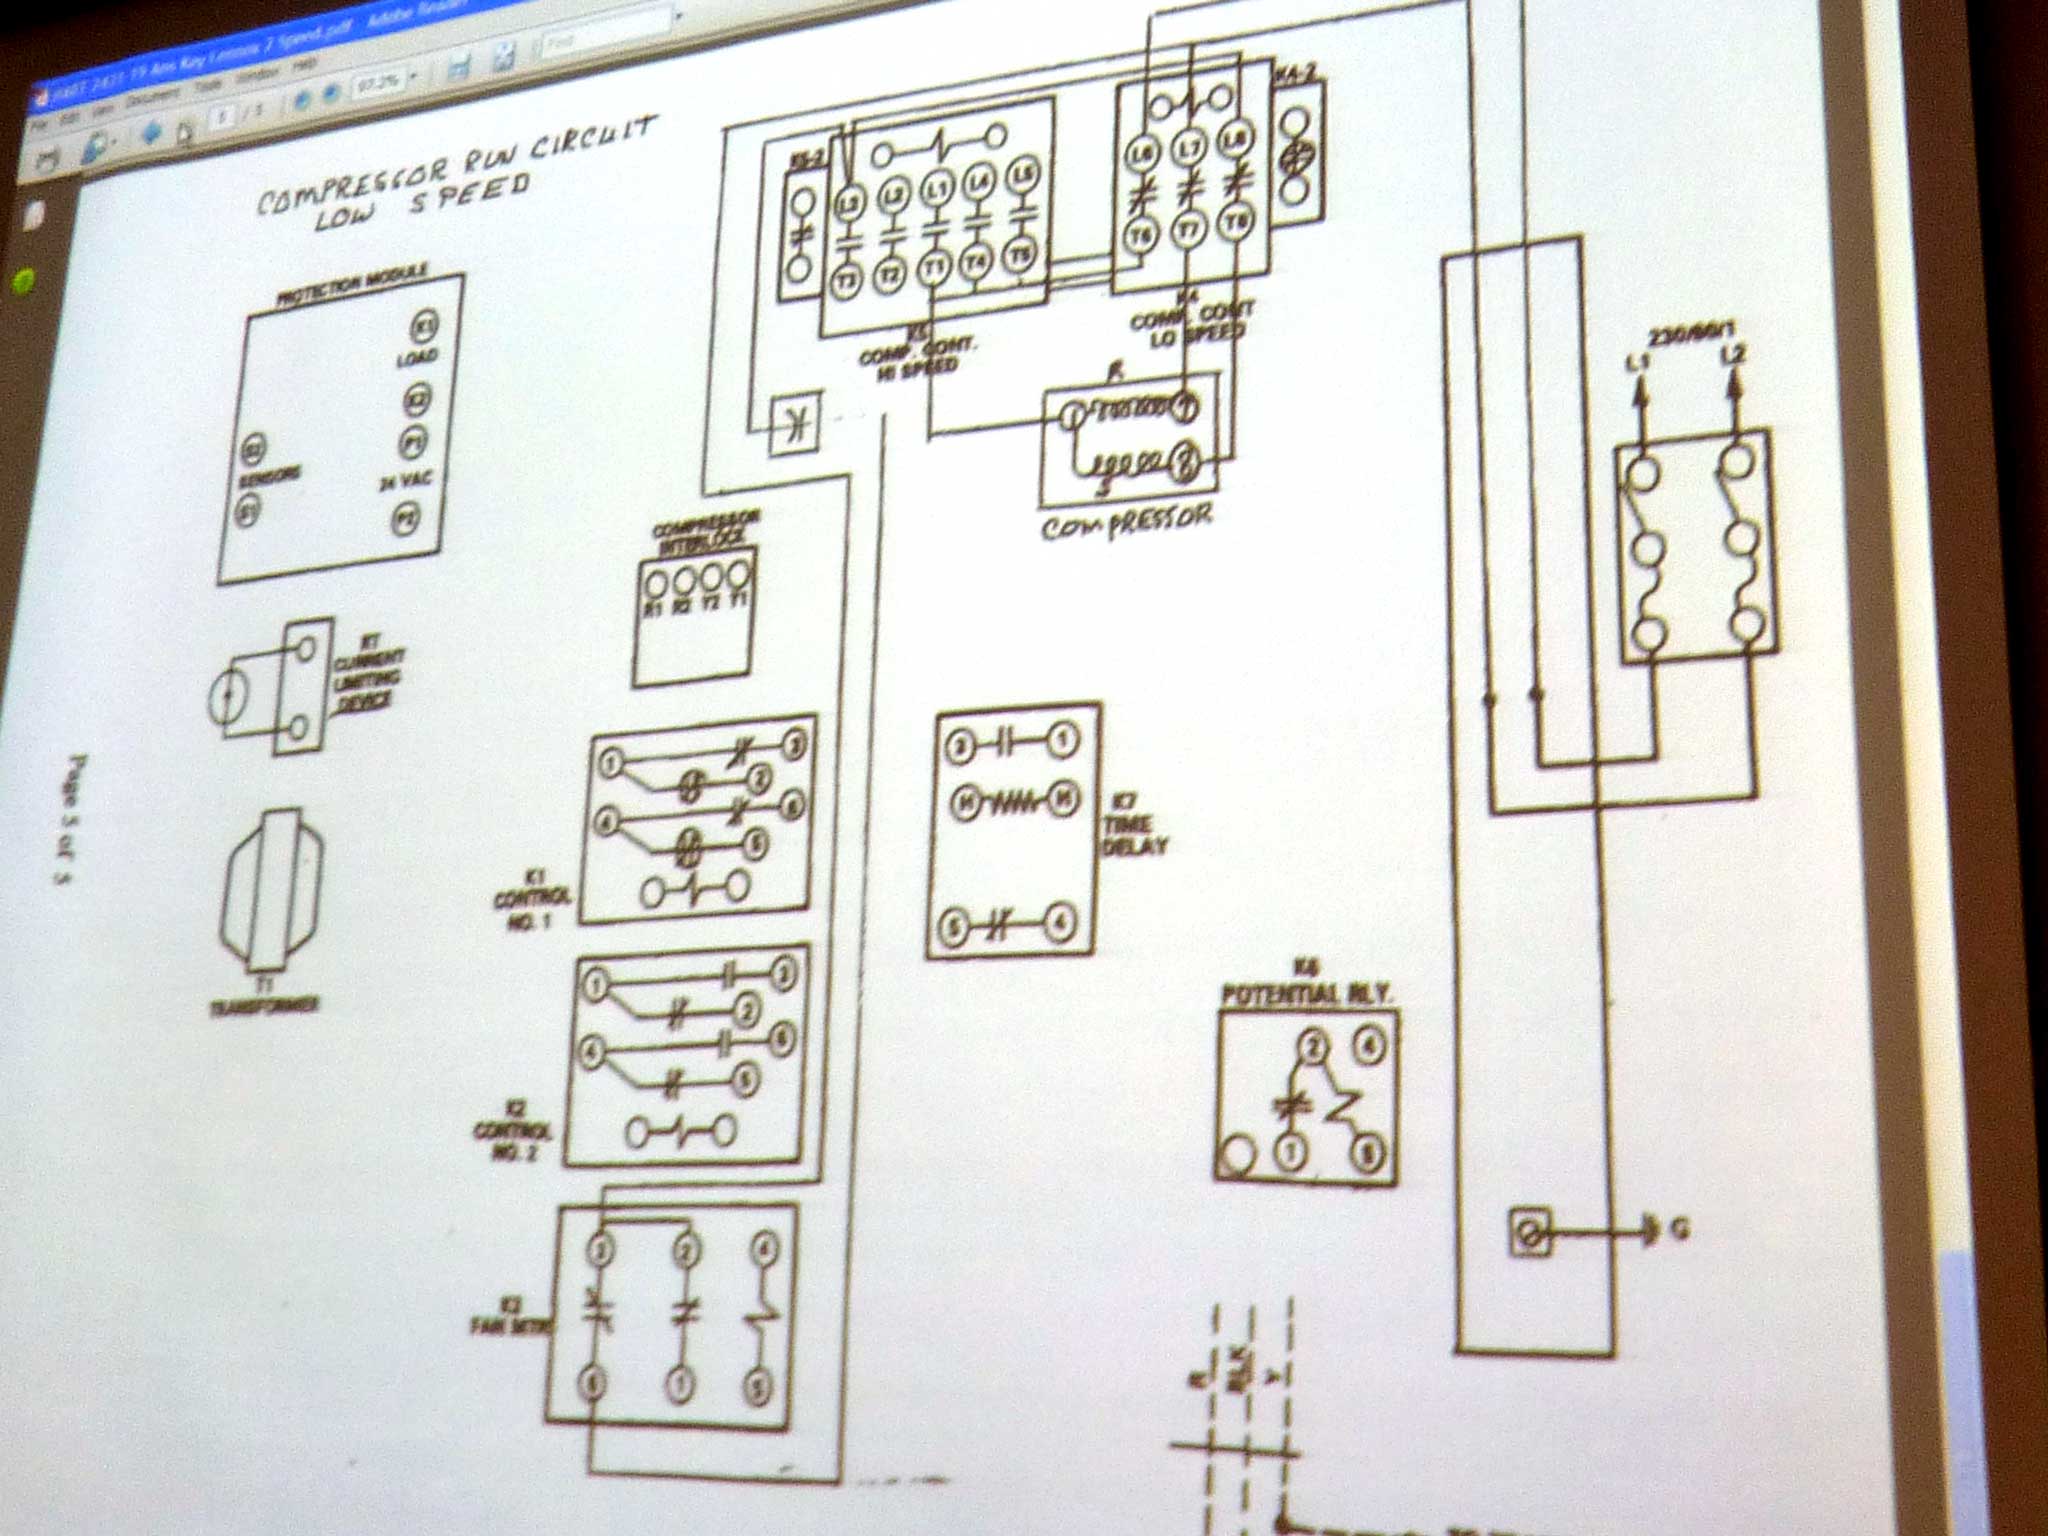 schematics for compressor run circuit